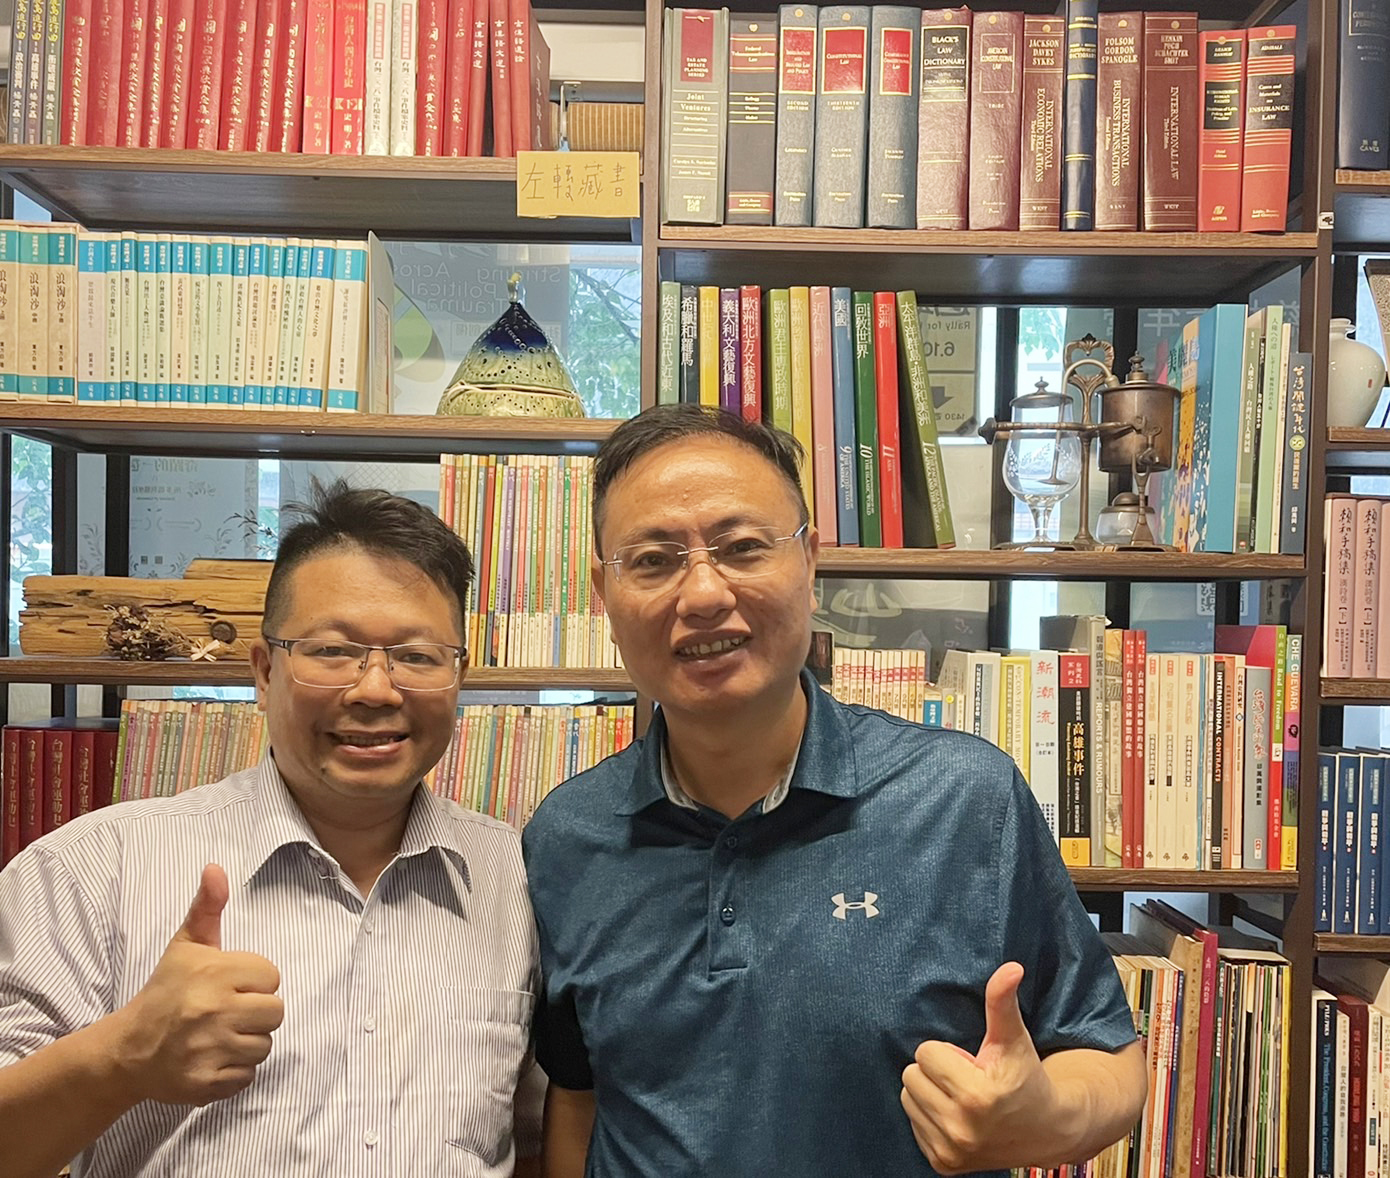 我 在 請 益 之 旅 ， 感 謝 正 修 科 大 的 吳 岱 儒 副 教 授 ( 右 ) 提 供 真 摯 的 建 議 ， 受 益 良 多 。 